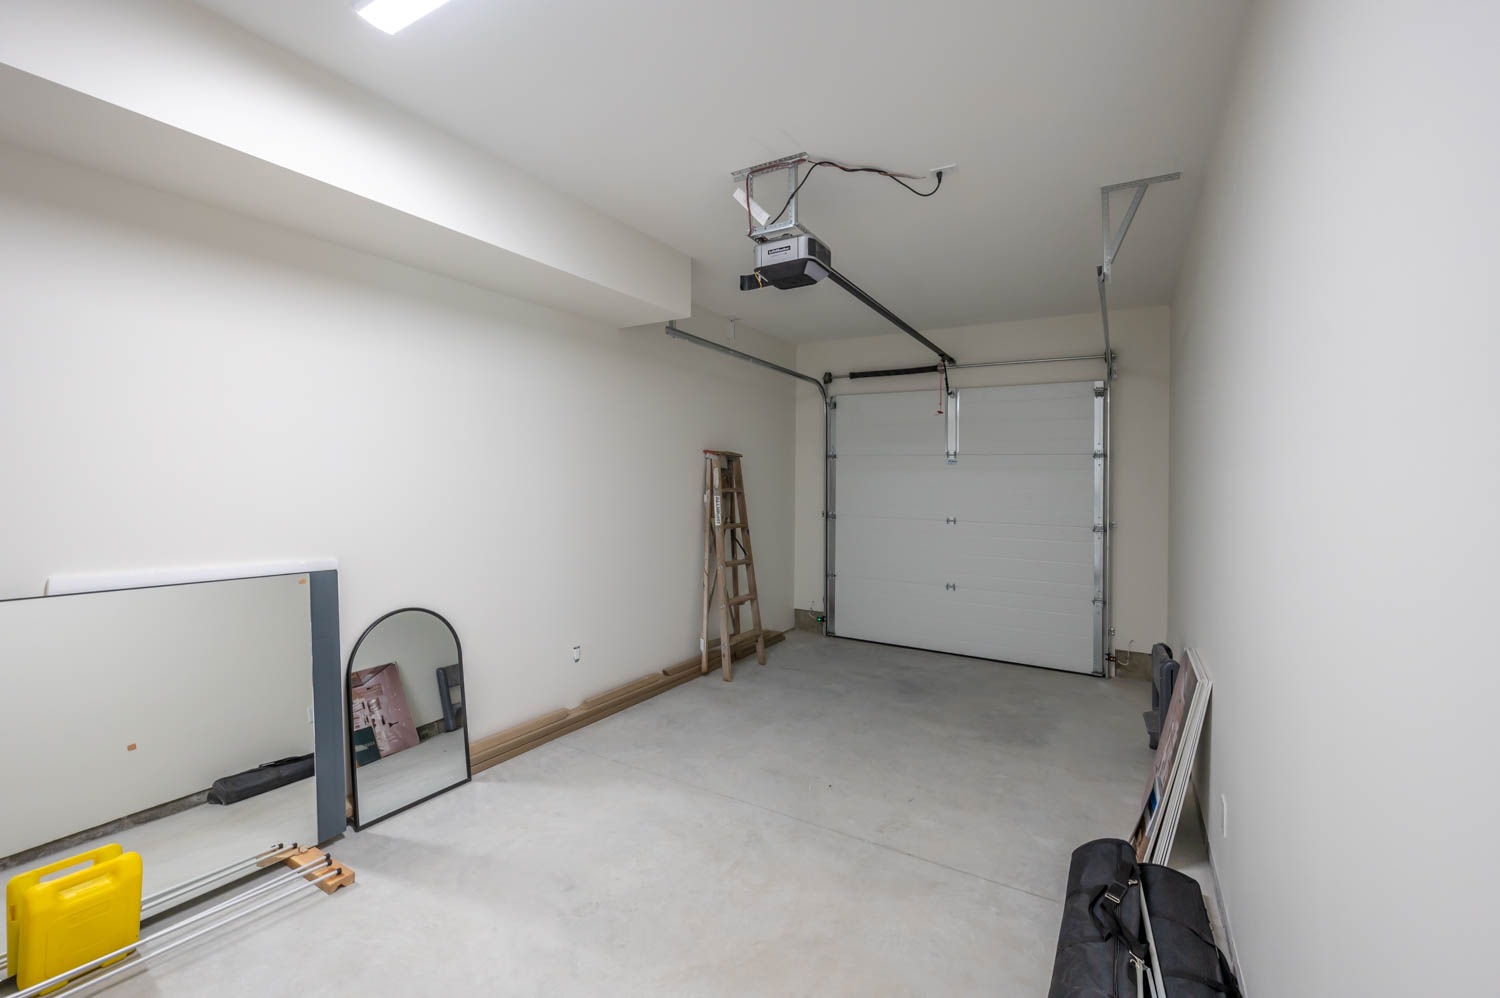 Garage interior with mirror and ladder